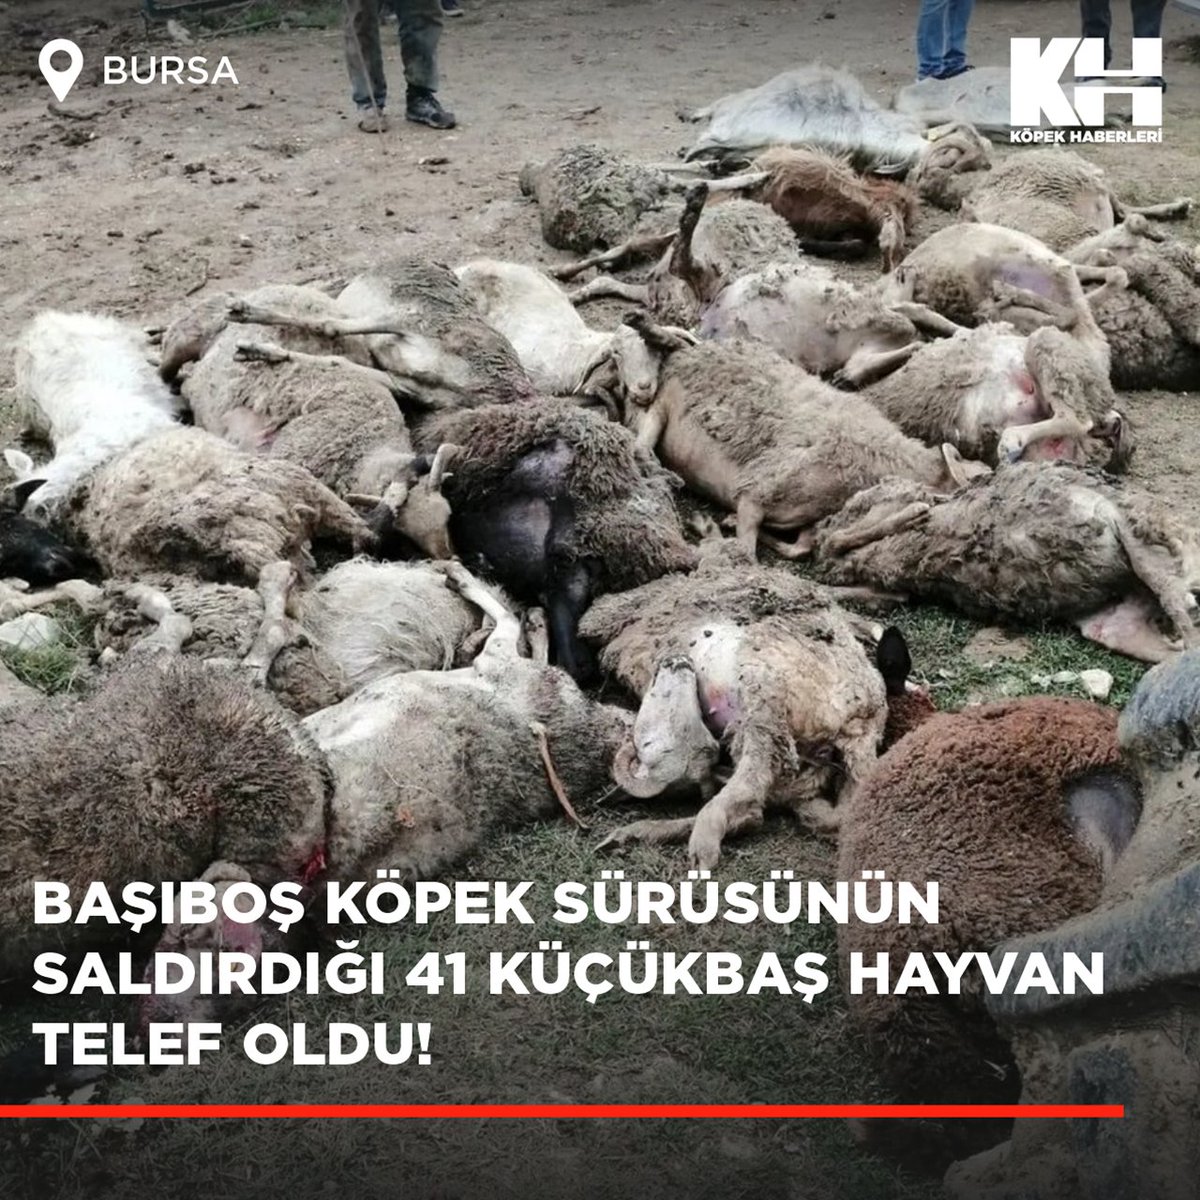 Bursa'nın Misi köyünde hayvancılık yapan Mustafa S.'ye ait 41 küçükbaş hayvan, sabaha karşı 25'e yakın başıboş köpeğin saldırısı sonucu telef oldu.